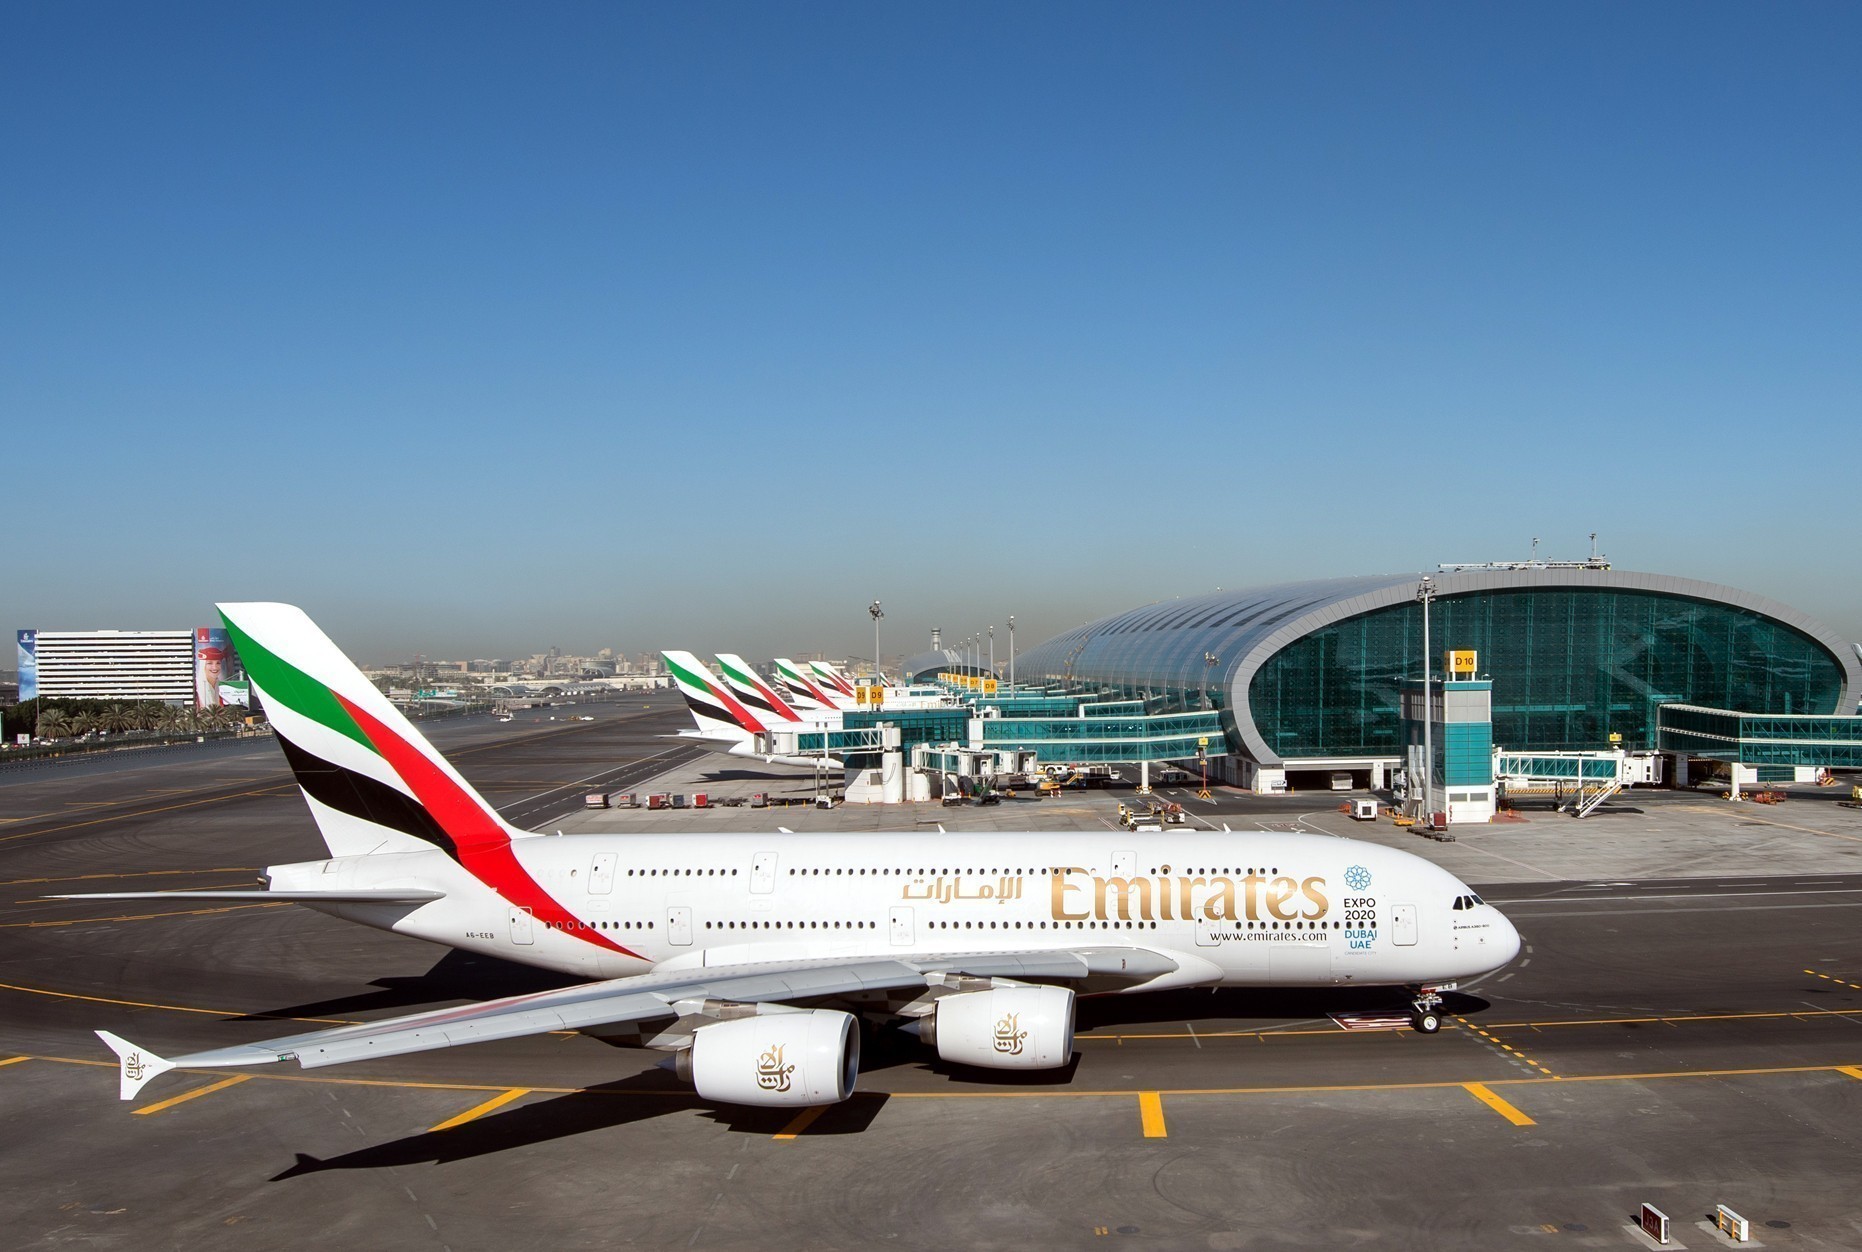 Emirates: Eνισχύει τη δραστηριότητά της σε παγκόσμιο επίπεδο – Στόχος η εξυπηρέτηση της αυξημένης ζήτησης το καλοκαίρι